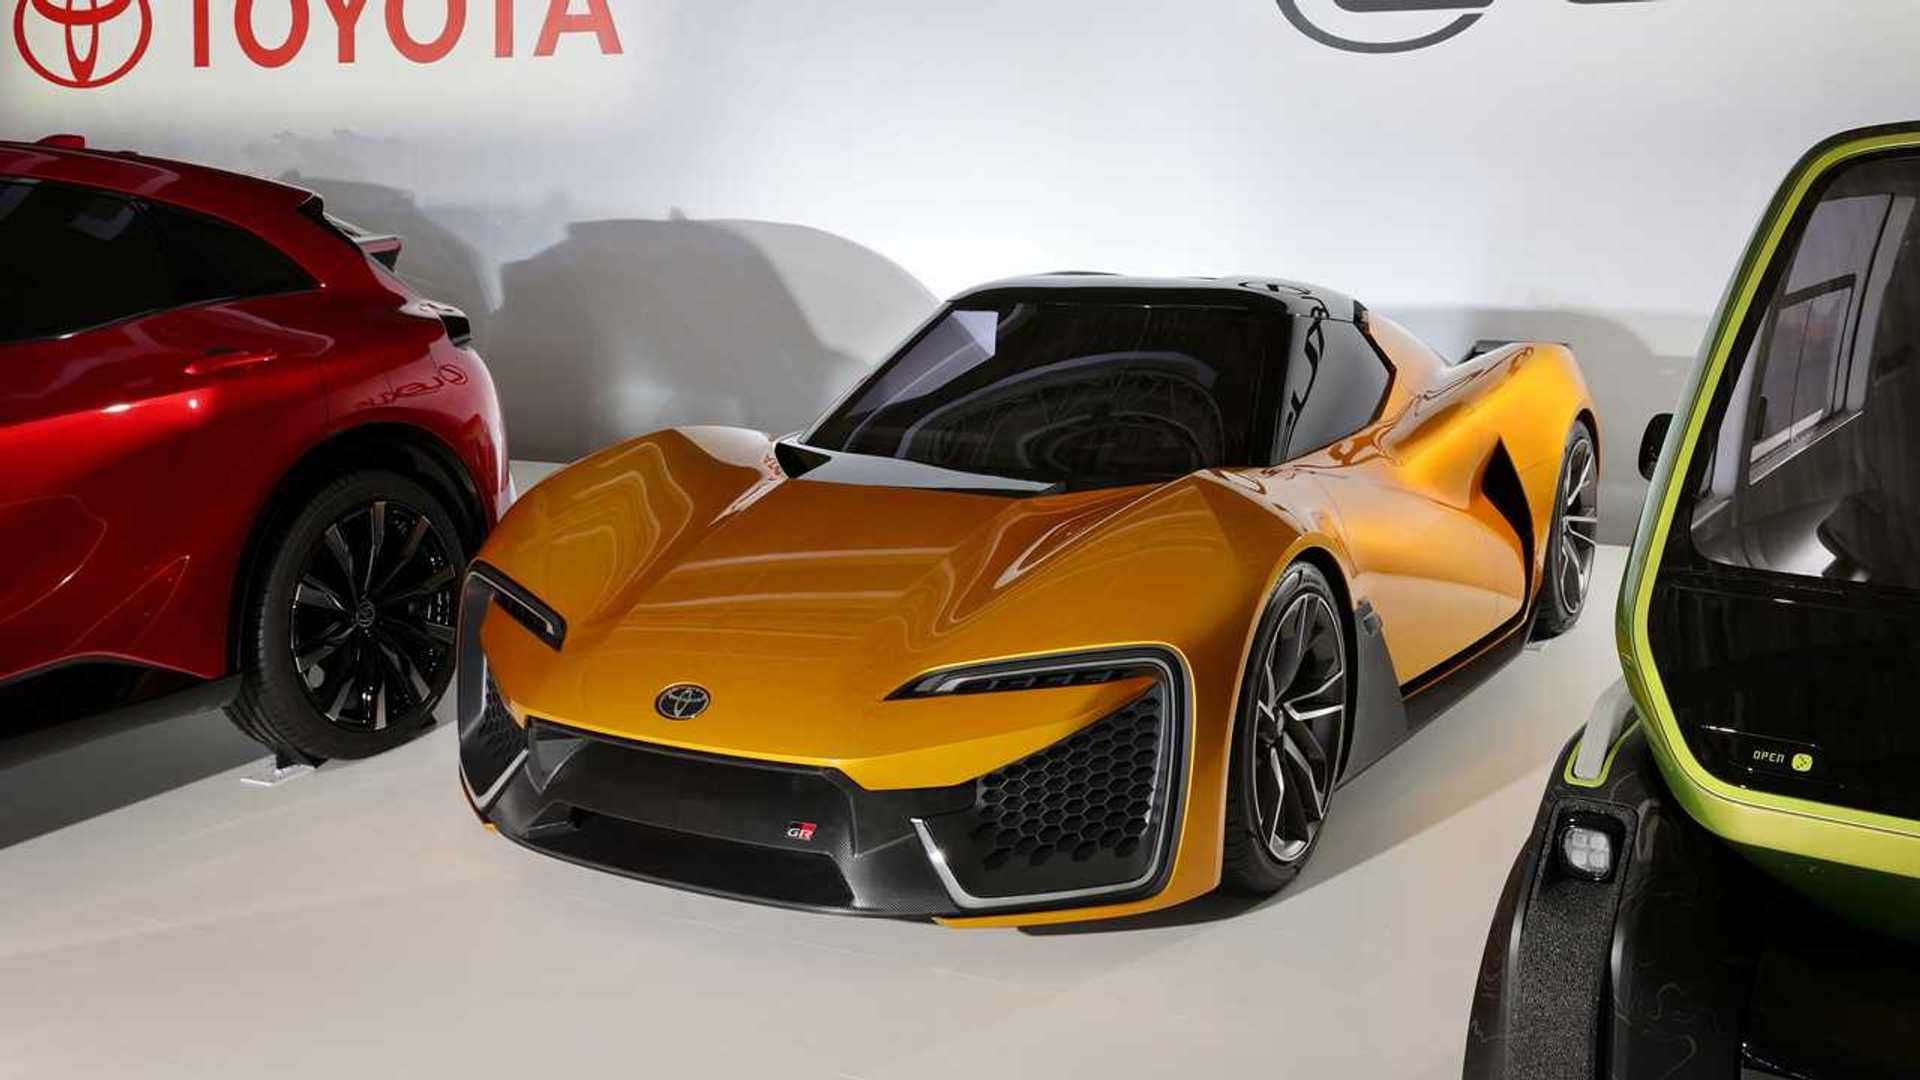 تويوتا تقدم براءة اختراع جديدة لناقل حركة يدوي للسيارات الكهربائية الرياضية بـ 14 سرعة! 4